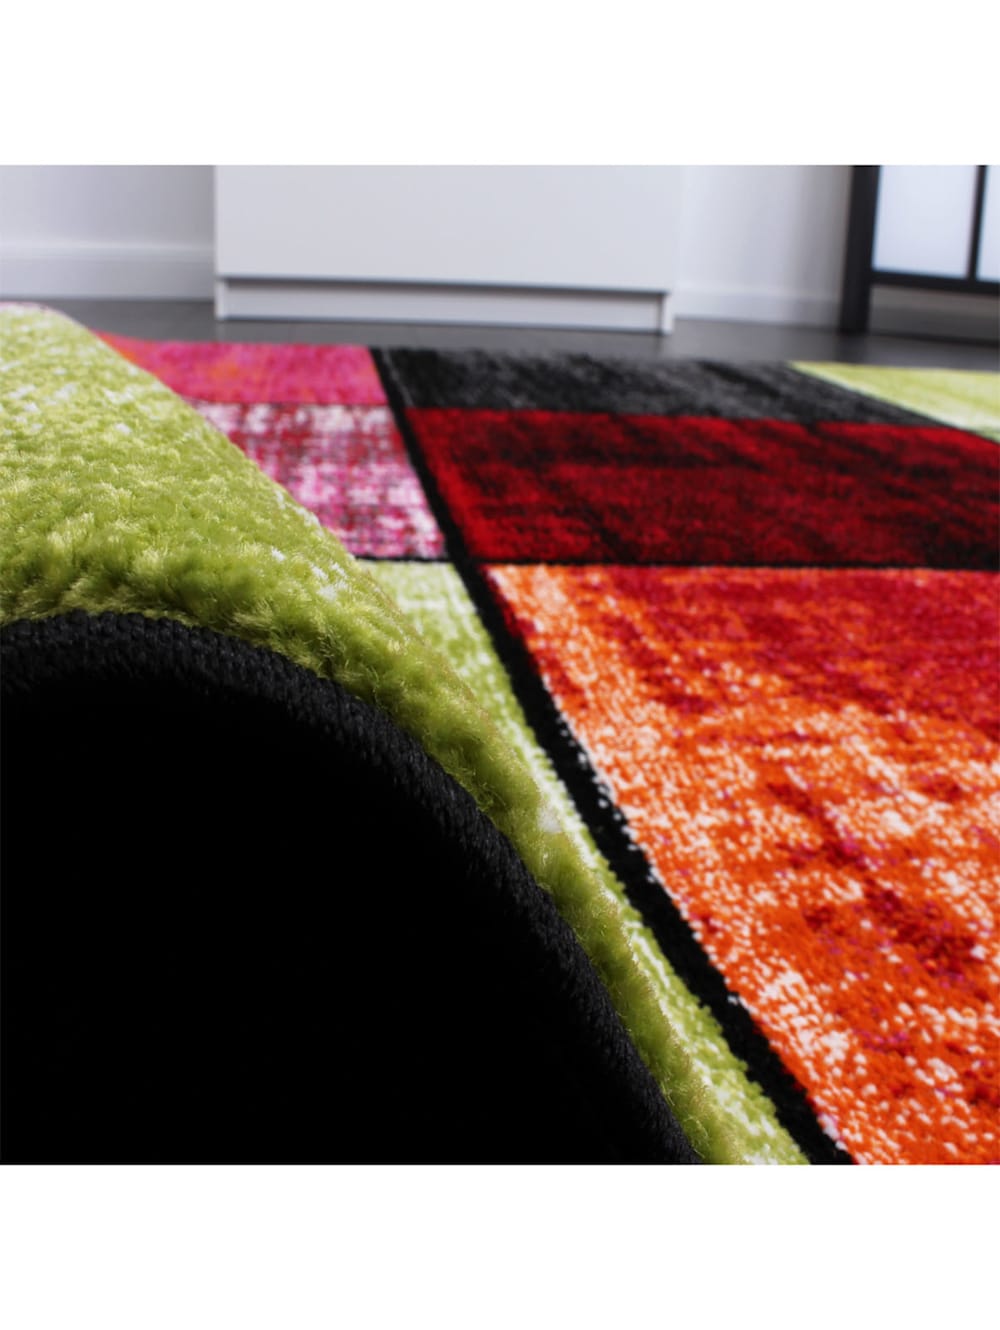 Designer Teppich Modern Trendiger Kurzflor Teppich in Rot Creme Meliert